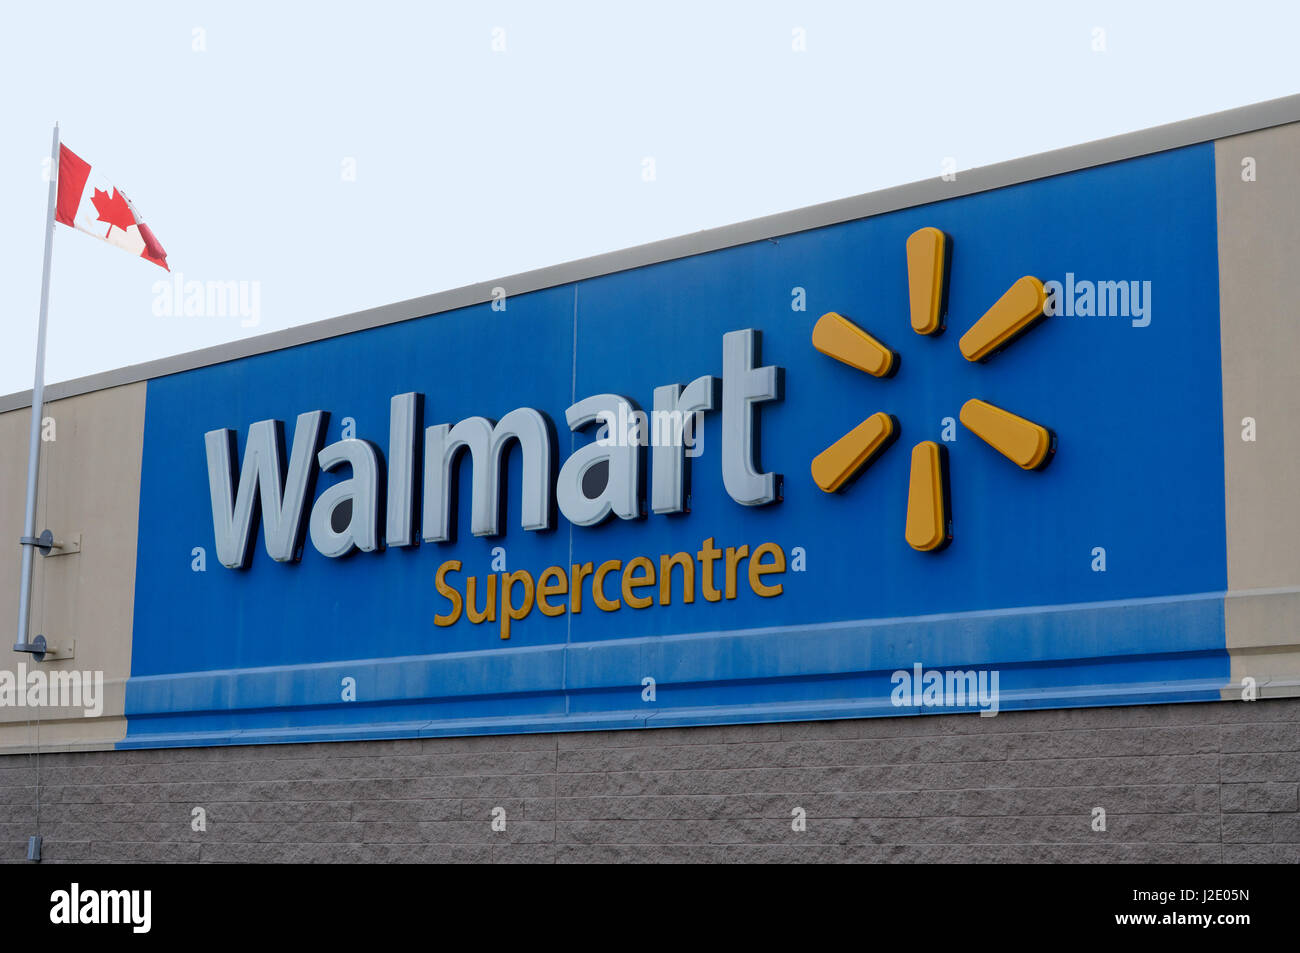 Walmart perdeu fôlego ao demorar para se adaptar ao Brasil, dizem